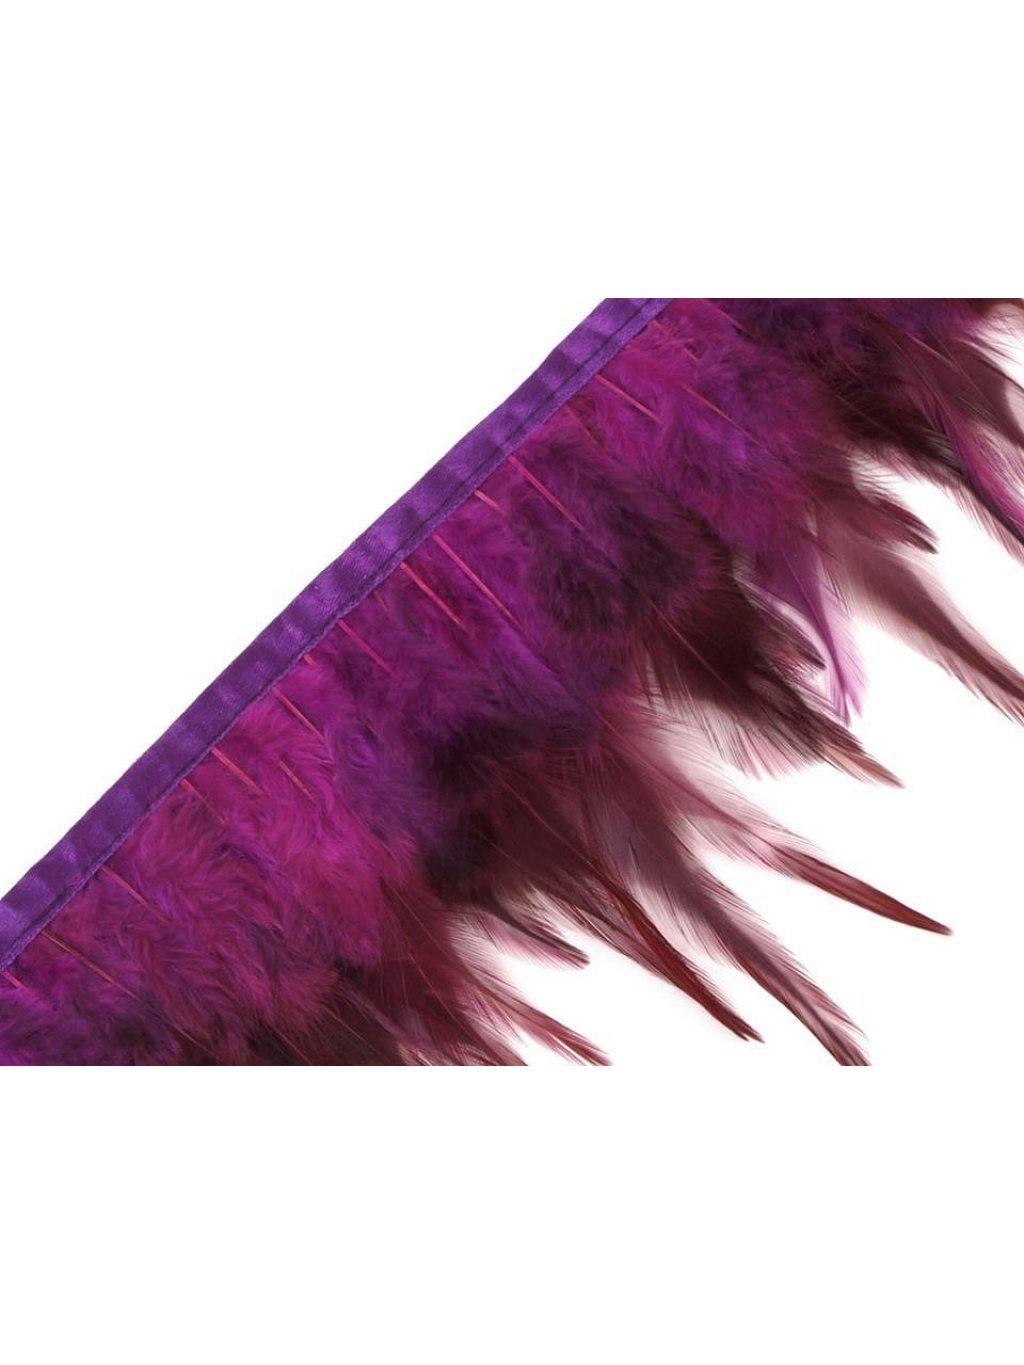 Prýmek - kohoutí peří fialové šíře 12 cm